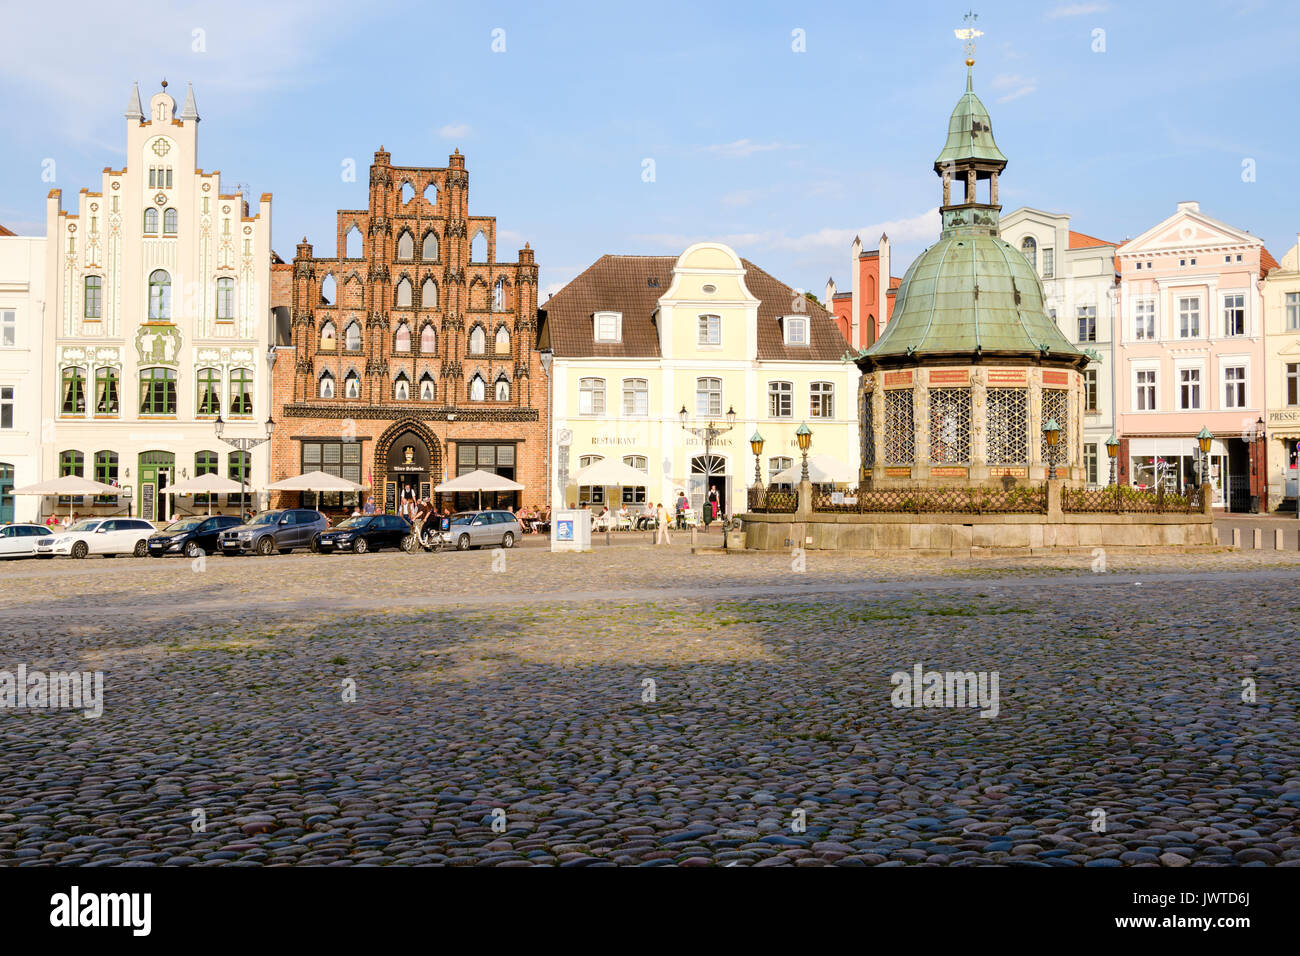 Marktplatz, am Markt mit der wasserkunst Brunnen und Alter Schwede Restaurant und Hotel, Wismar, Mecklenburg-Vorpommern, Deutschland Stockfoto